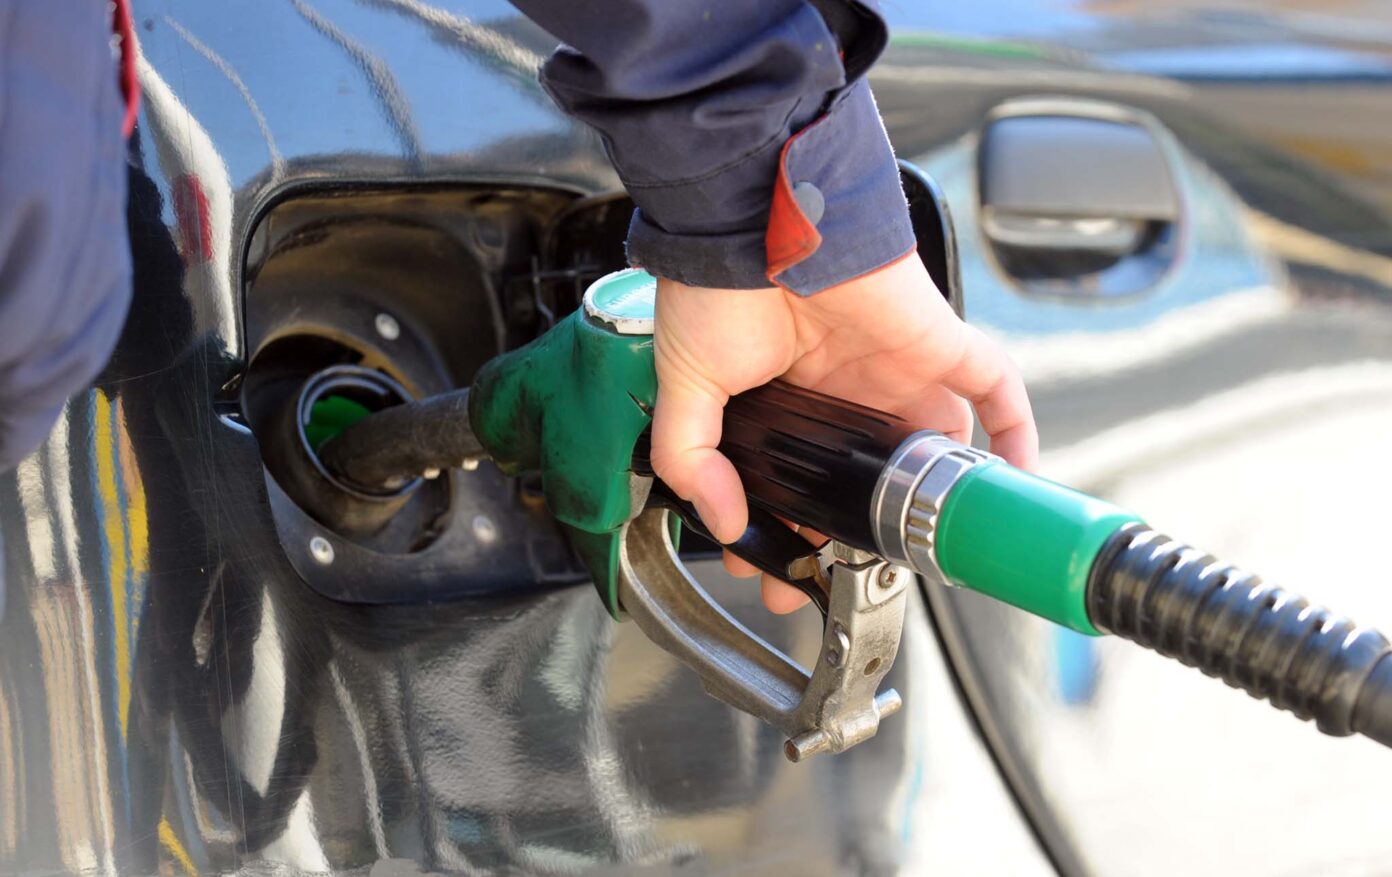 Kur dilni nga vetura dhe shkoni për të mbushur karburant, prekni automjetin – kjo mund t’ju shpëtojë jetën